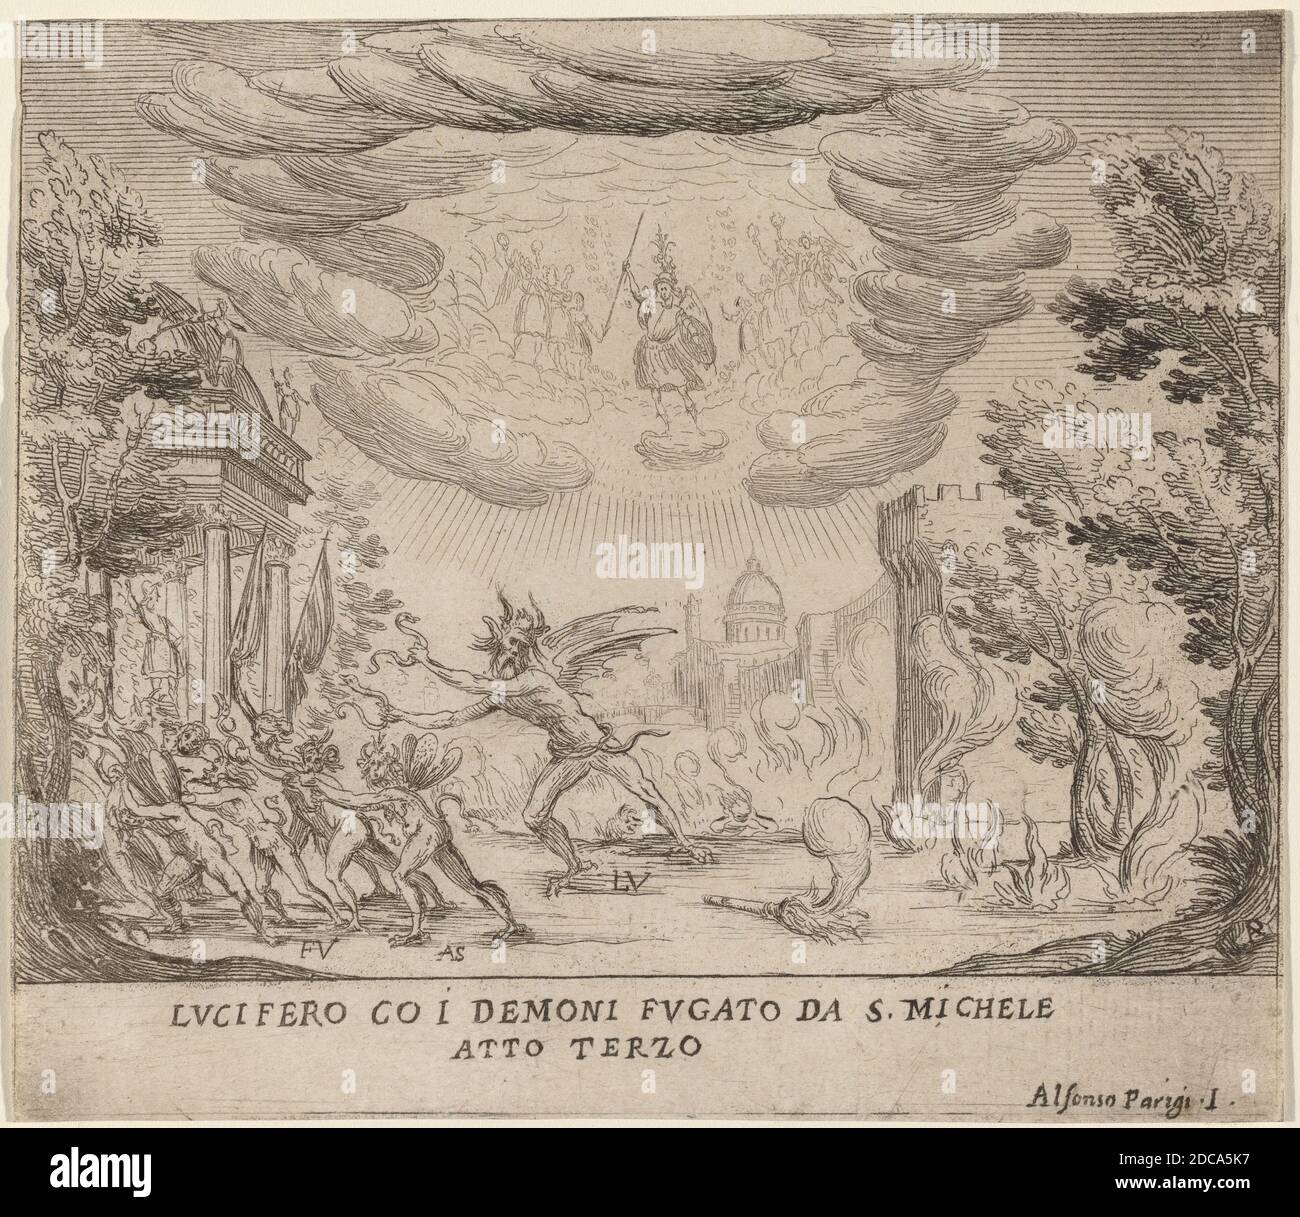 Alfonso Parigi II, (artista), fiorentino, 1606 - 1656, Lucifero e Demoni in fuga da San Michele, la tragedia di Sant'Ursula: Atto III, (serie), incisione Foto Stock